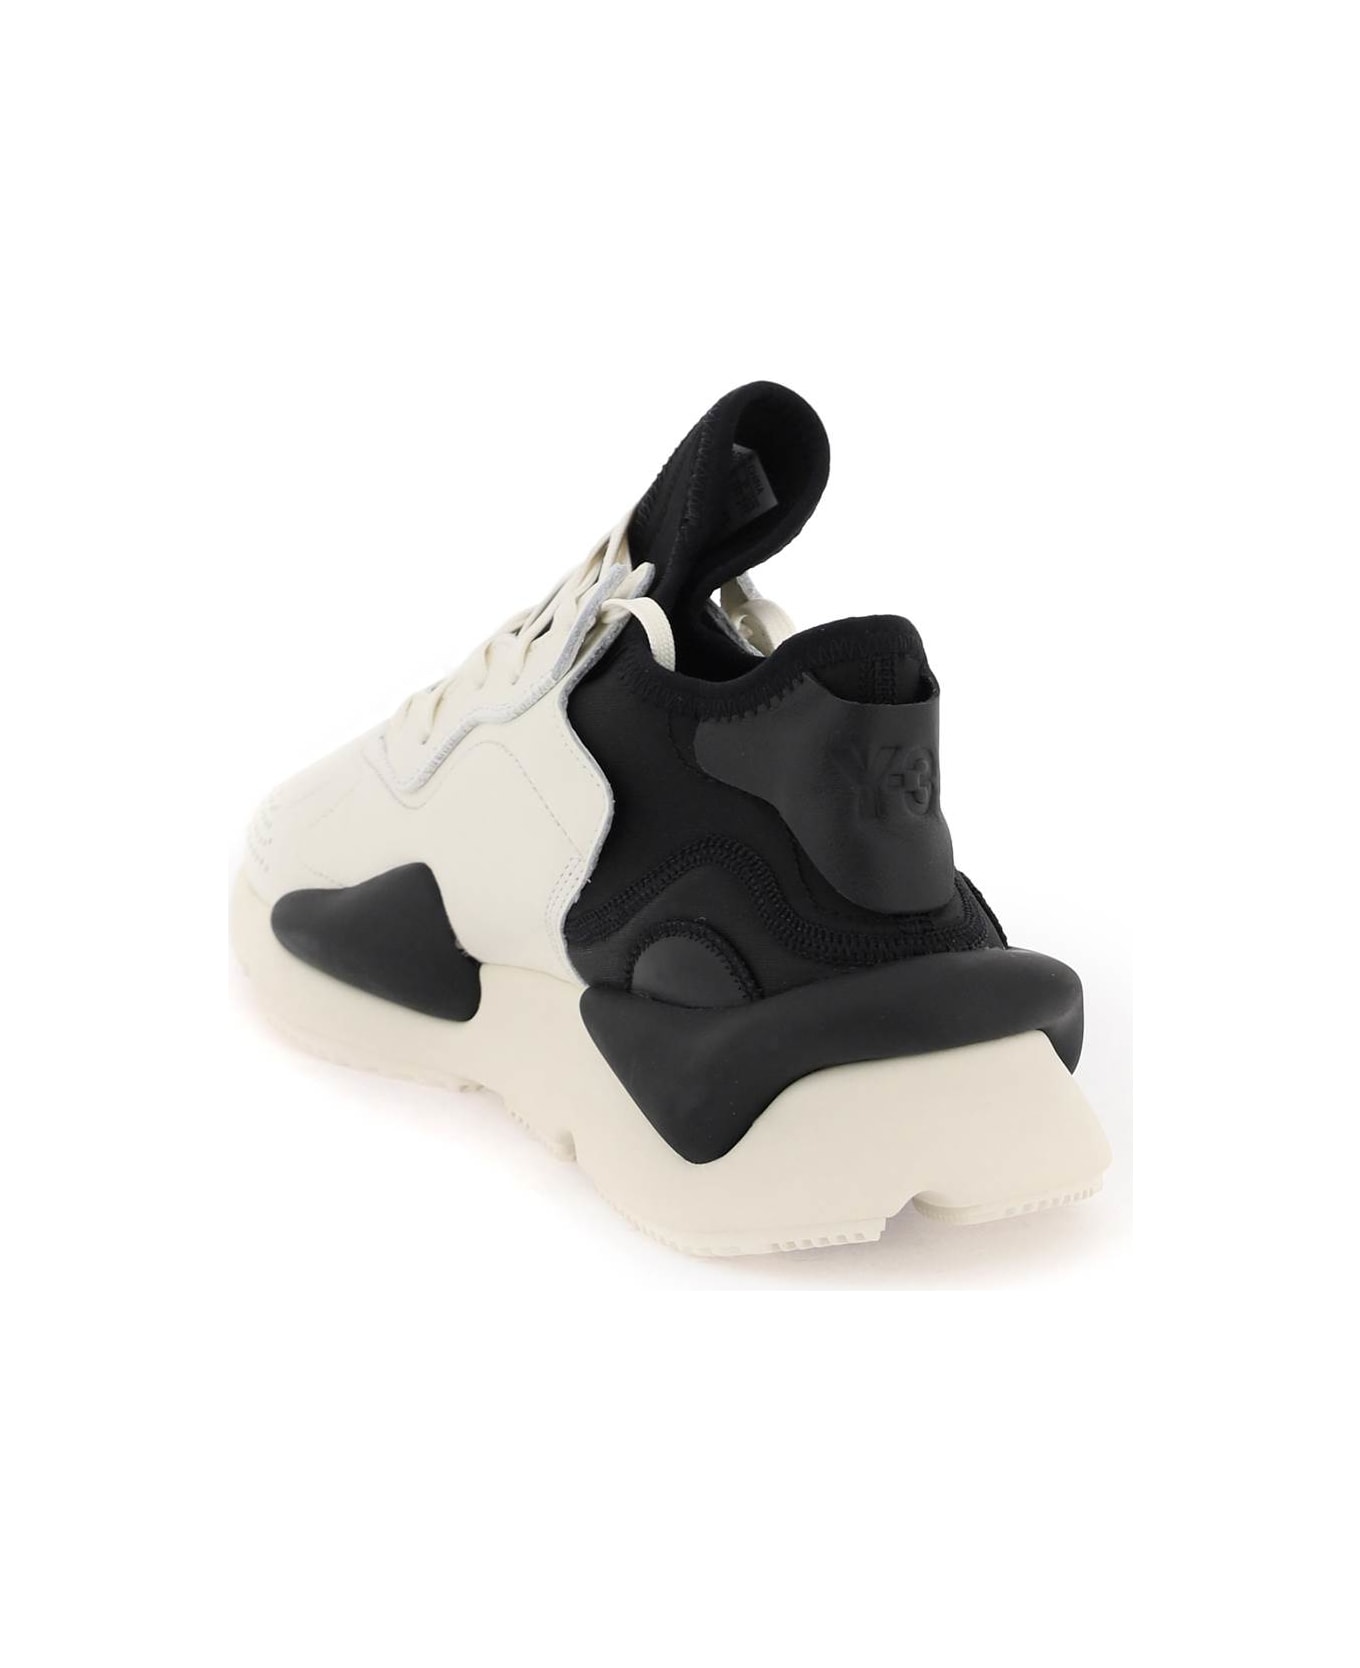 Y-3 'kaiwa' White Leather Sneakers - White スニーカー